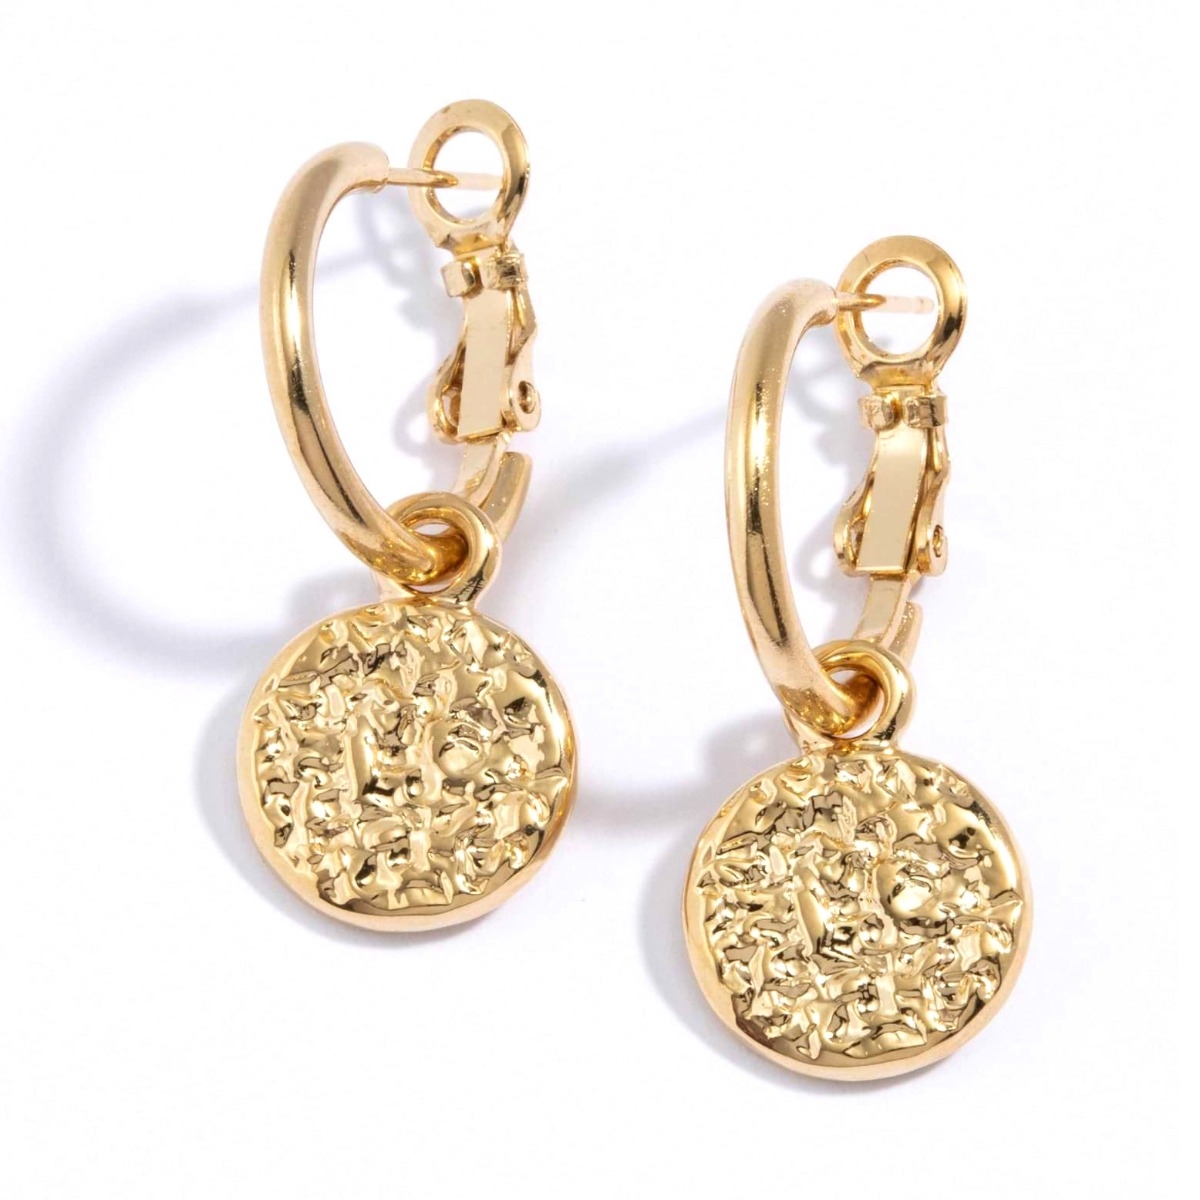 Danon Jewelry "Kon" Dangle Earrings - 1